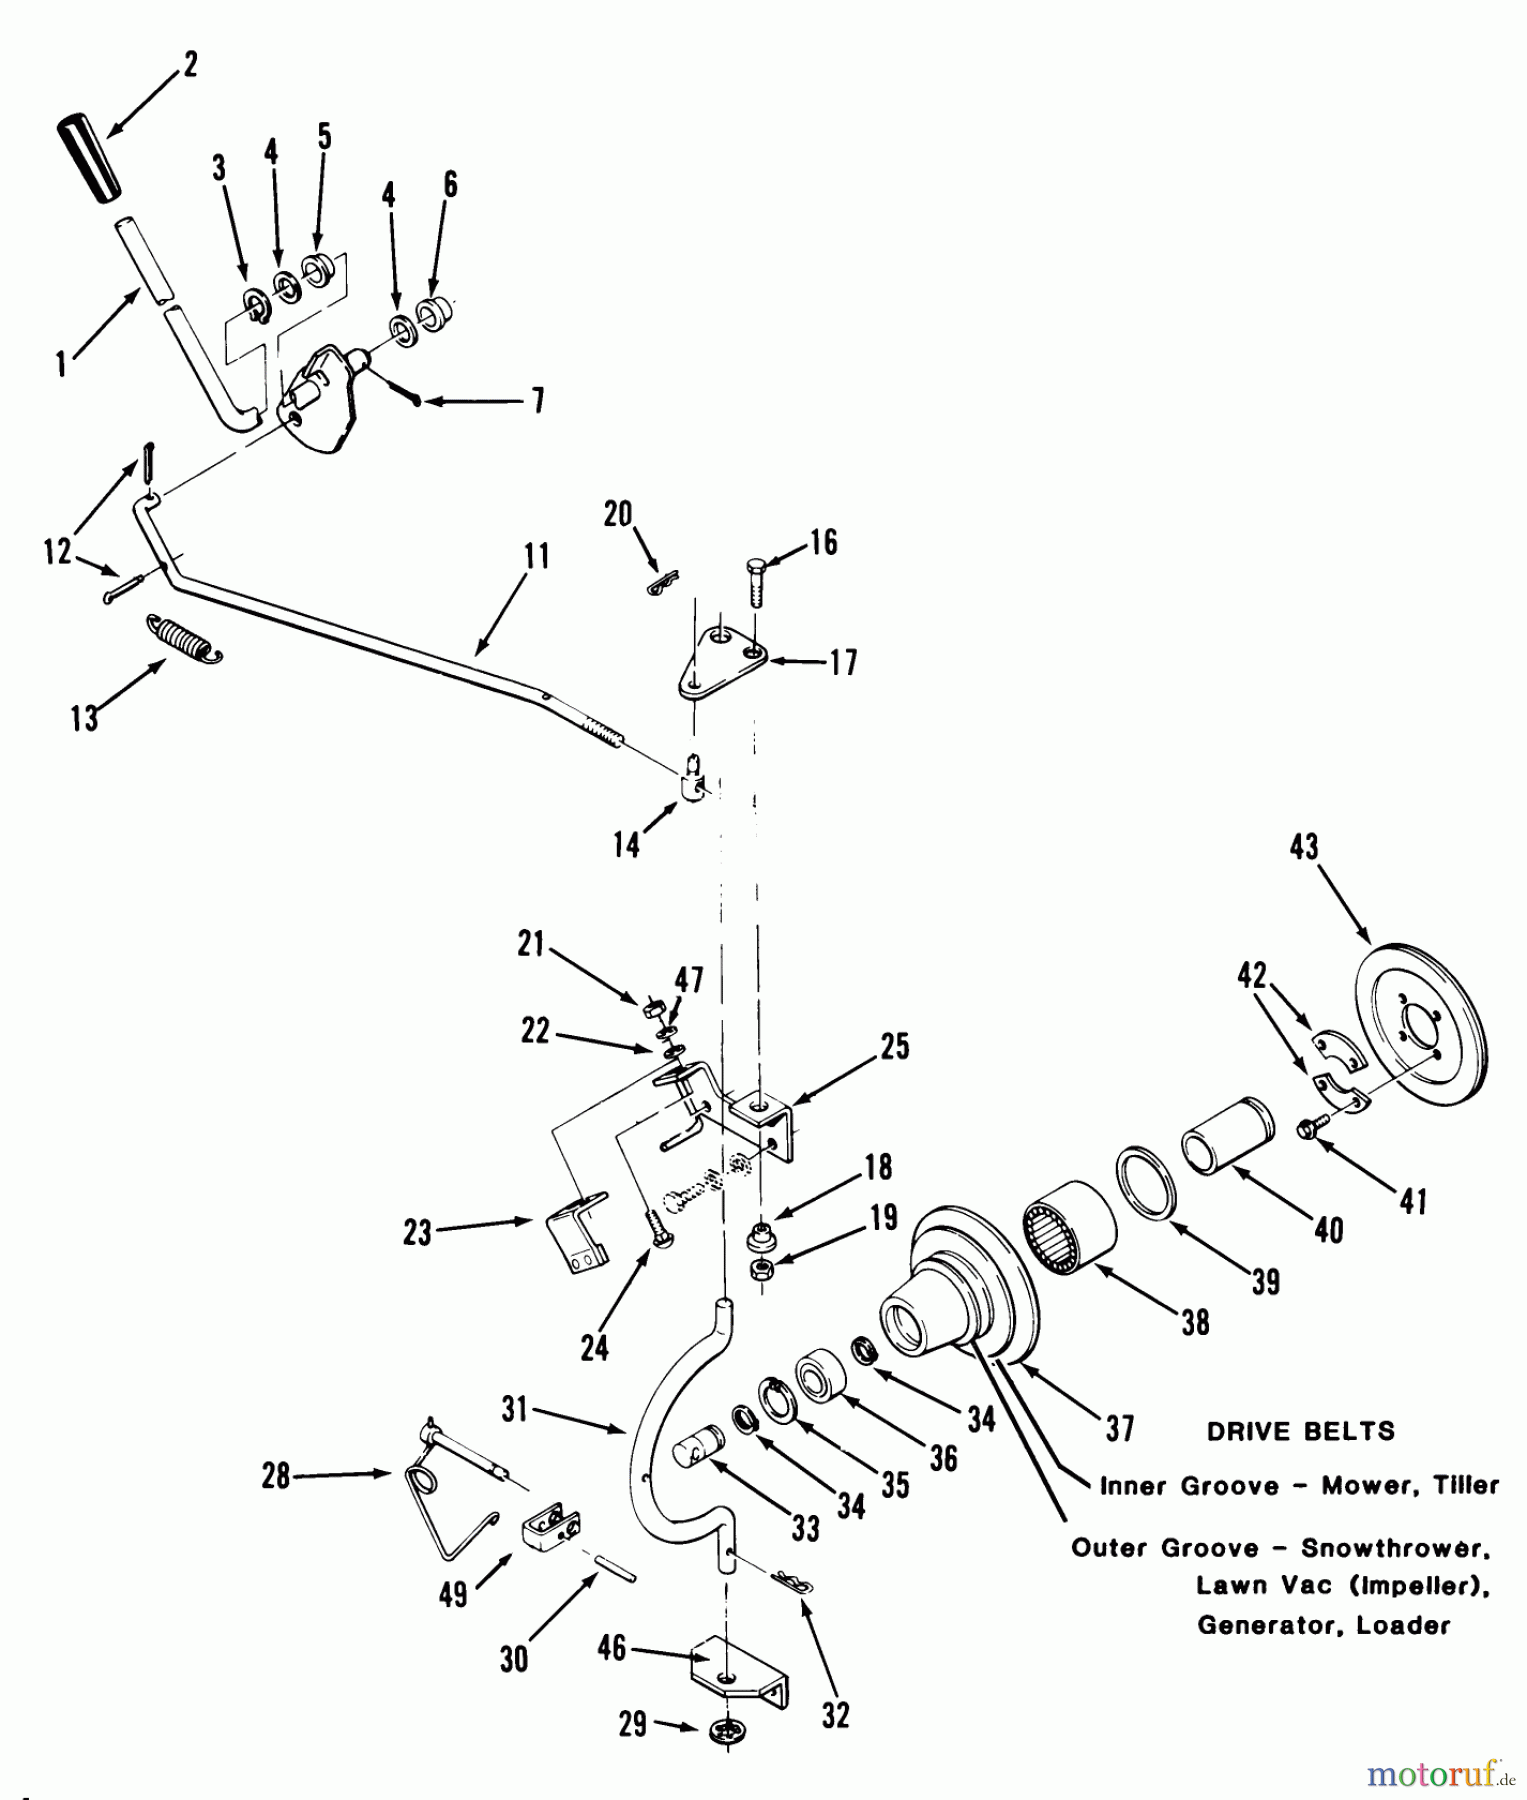  Toro Neu Mowers, Lawn & Garden Tractor Seite 1 31-16O801 (416-8) - Toro 416-8 Garden Tractor, 1989 PTO CLUTCH AND CONTROL